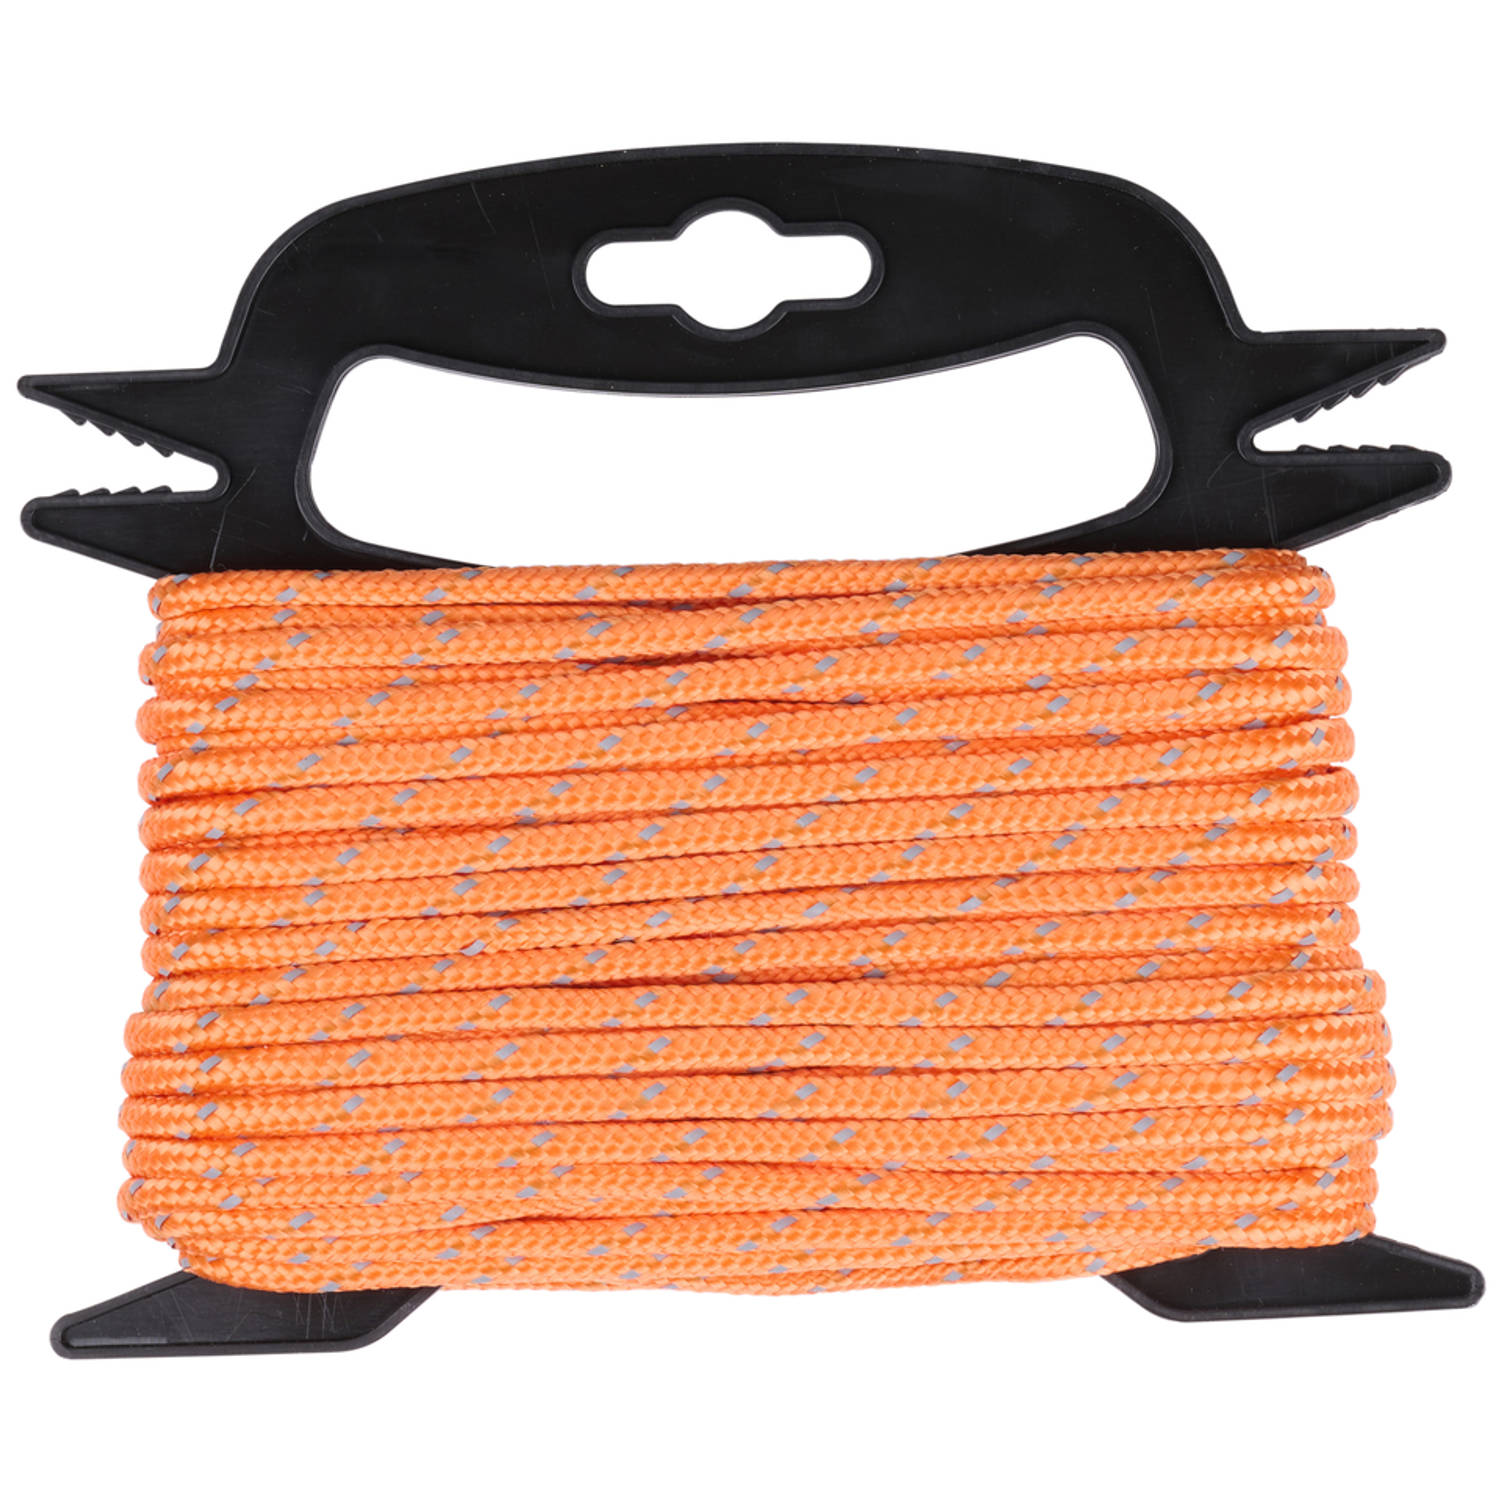 BLACK+DECKER Spanband met Oproller 20 Meter - Incl. Spanband Oproller - met Reflecterende Delen - Oranje/Zwart